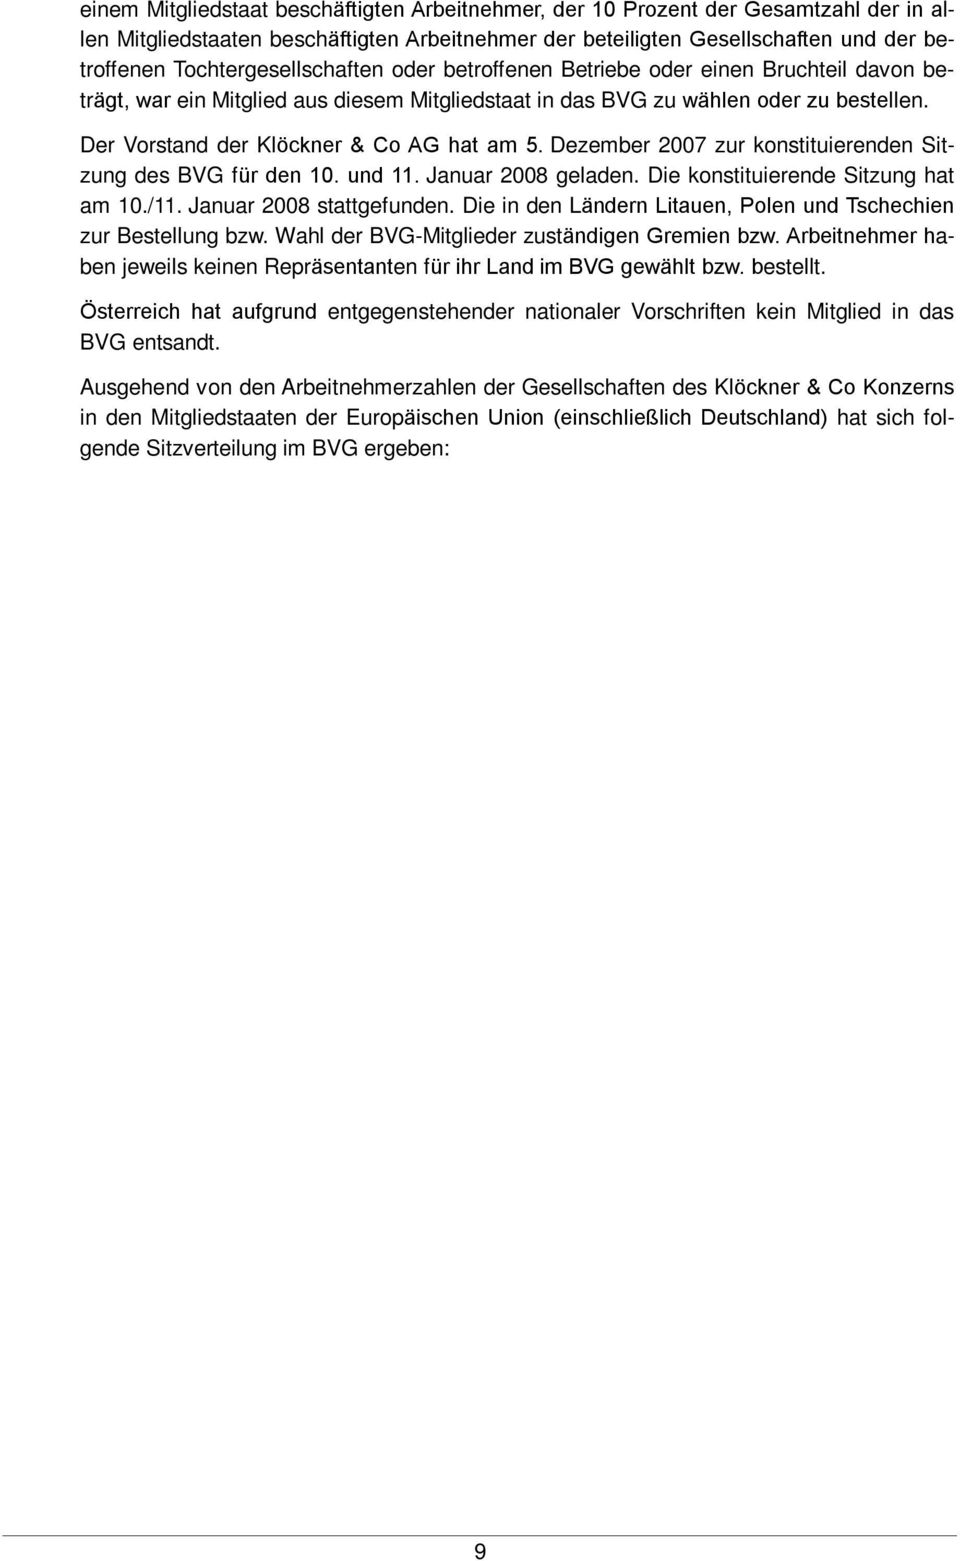 Der Vorstand der Klöckner & Co AG hat am 5. Dezember 2007 zur konstituierenden Sitzung des BVG für den 10. und 11. Januar 2008 geladen. Die konstituierende Sitzung hat am 10./11.